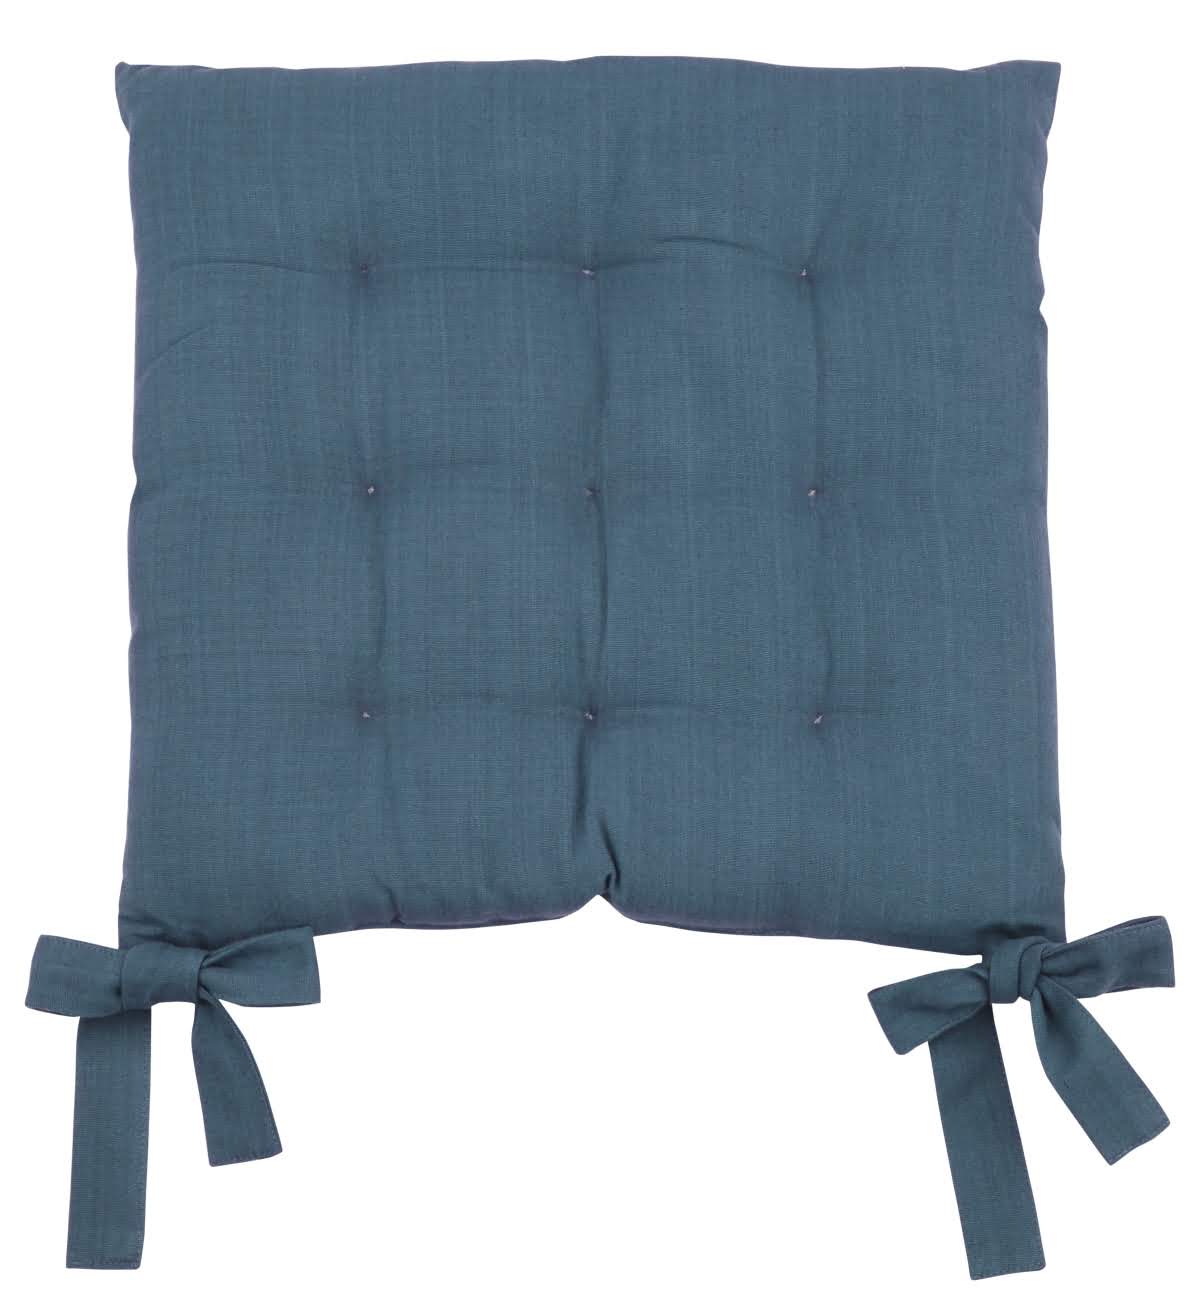 Modrý podsedák na stoličku TEREZA 40x40x3 cm